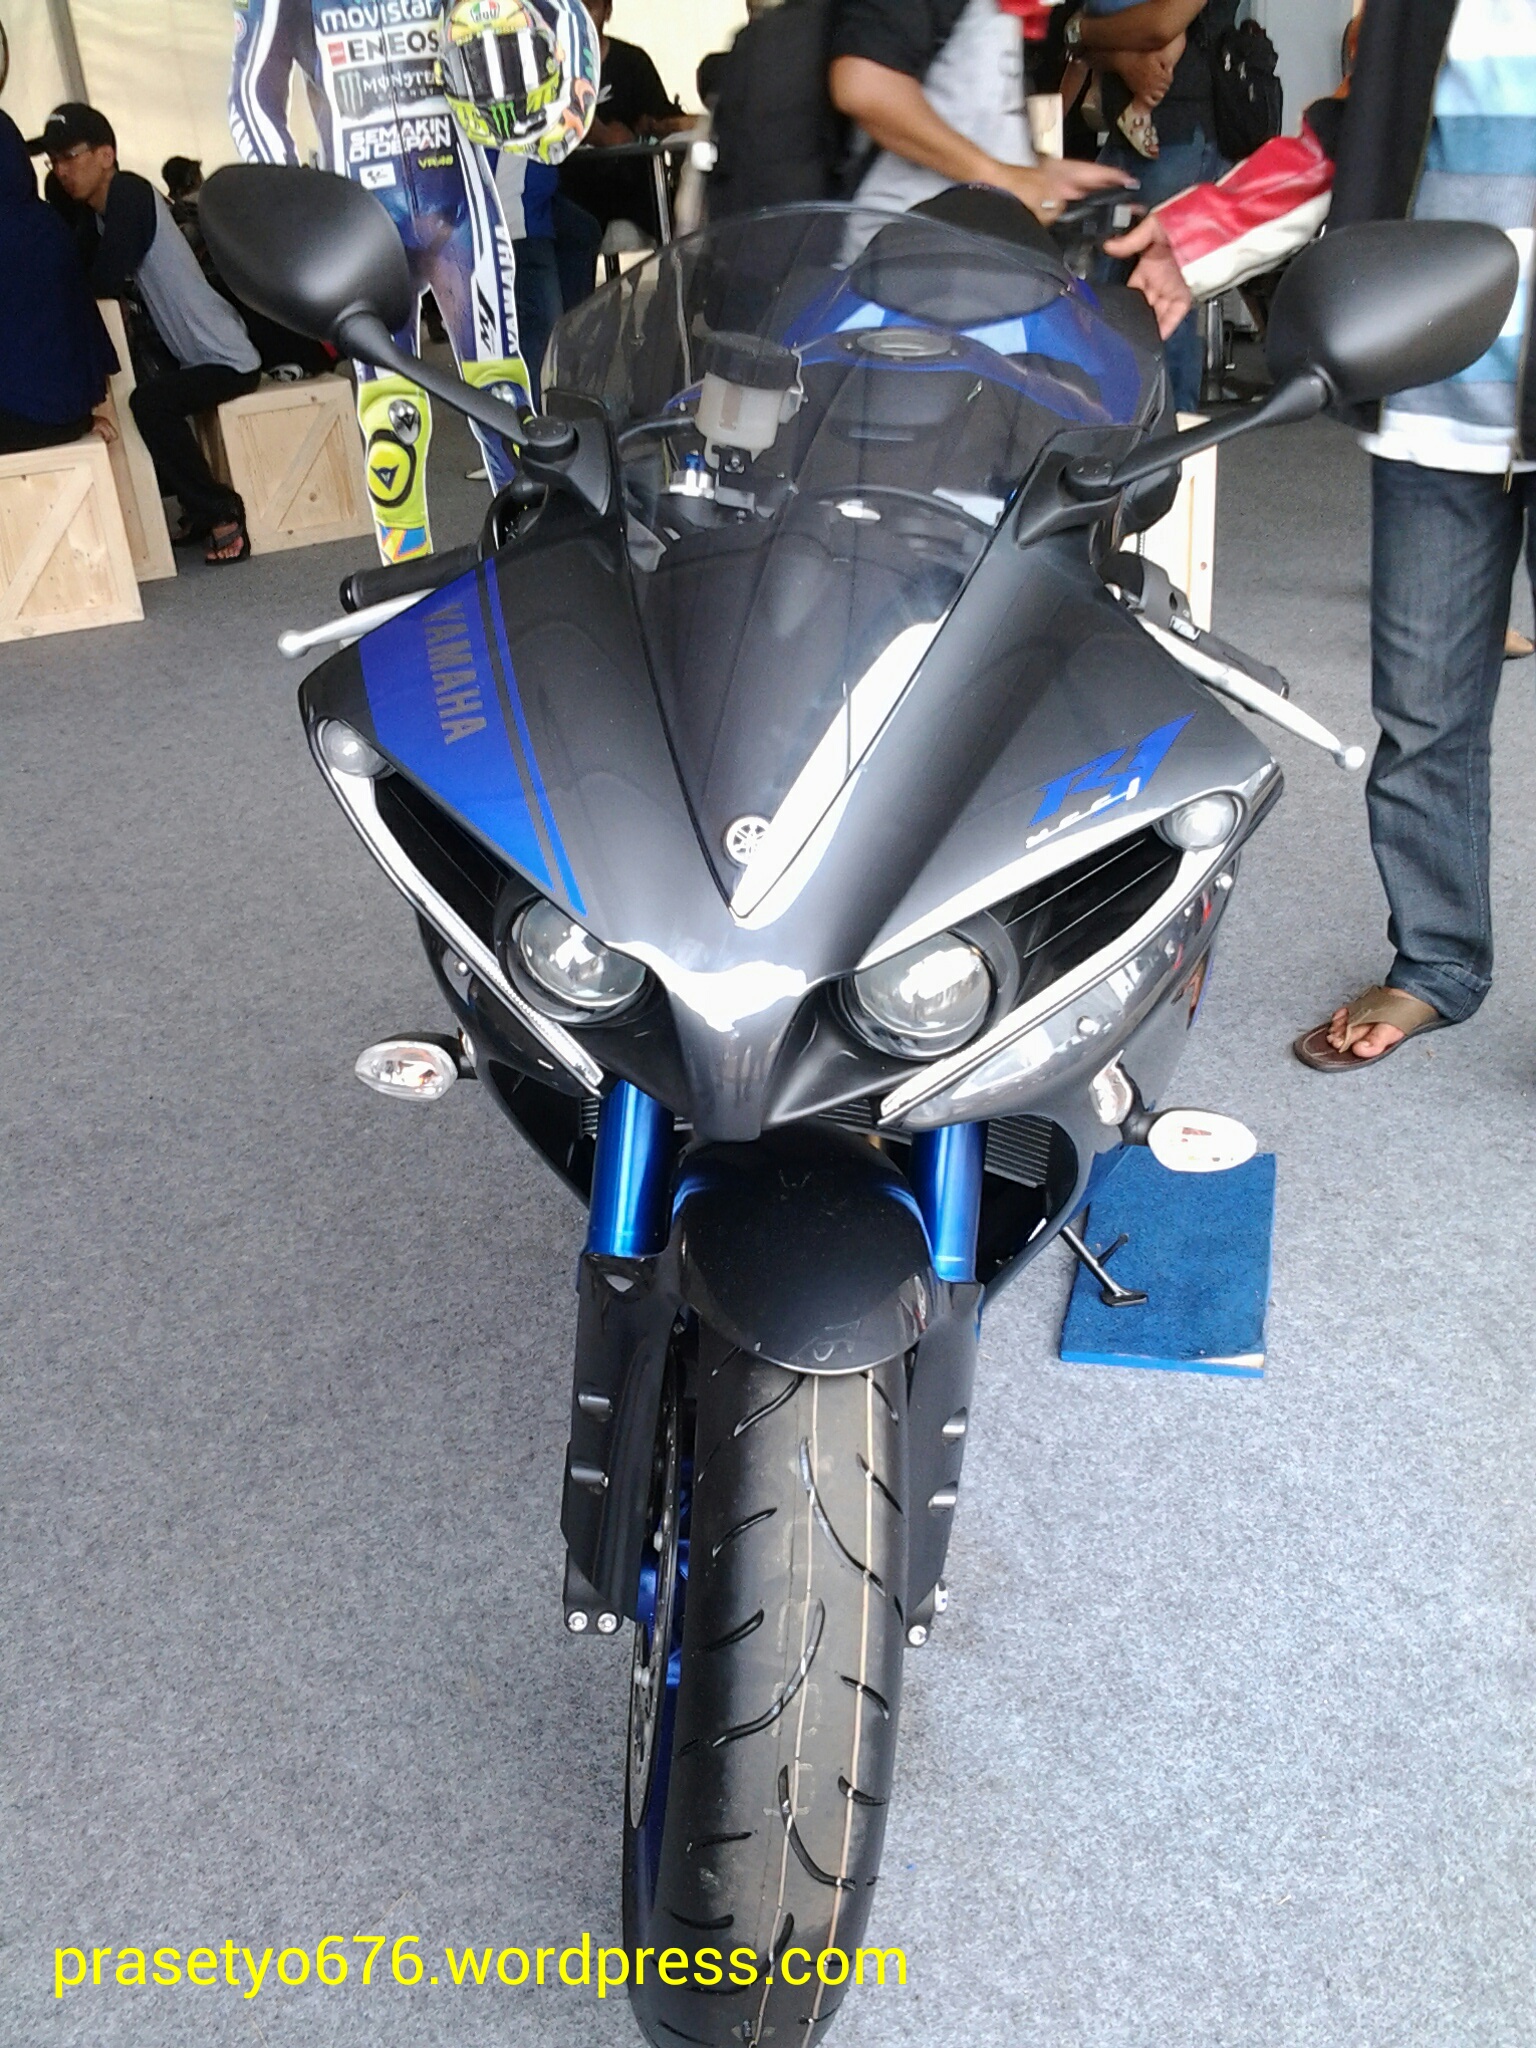 Yamaha YZF R1 2014 Superbike 1000 Cc Andalan Yamaha